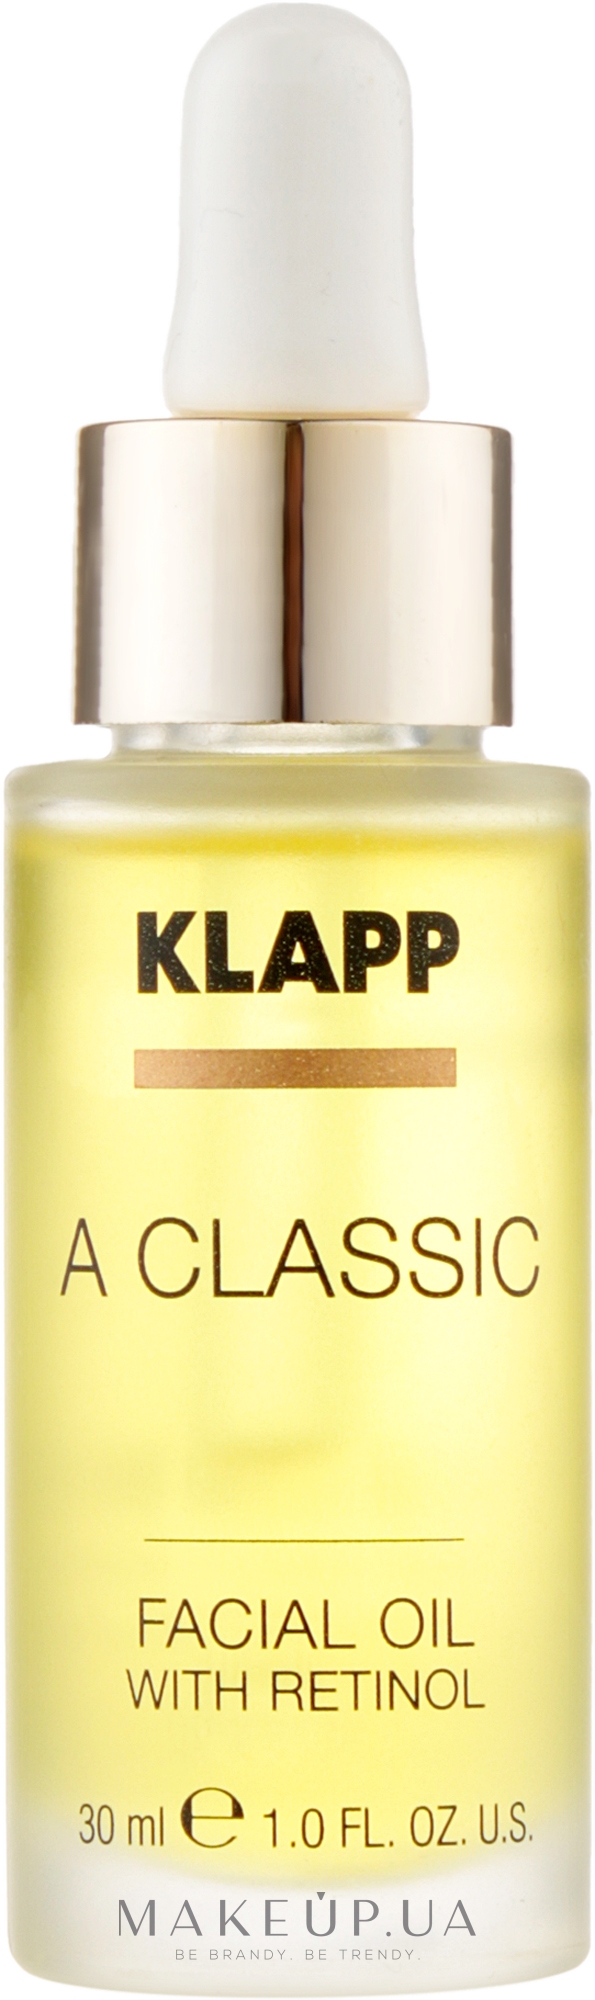 Масло для лица с ретинолом - Klapp A Classic Facial Oil With Retinol — фото 30ml